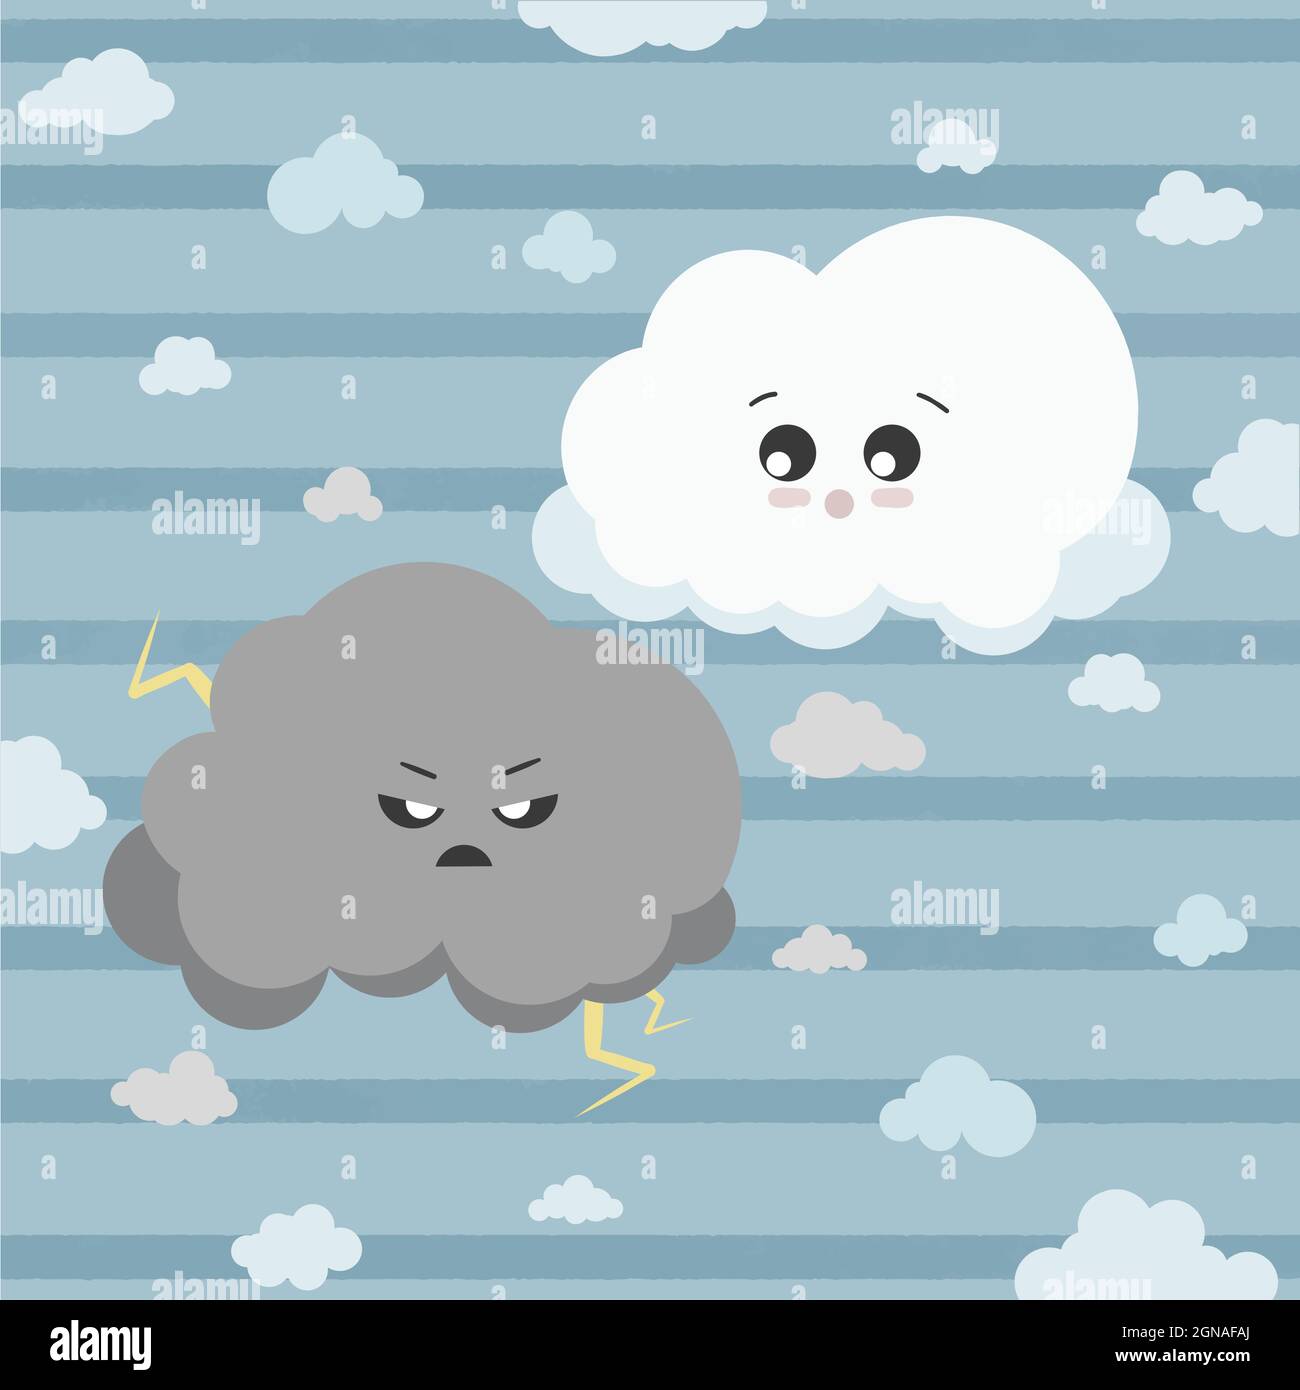 Un joli nuage de tonnerre et un nuage moelleux, ainsi que de petits nuages amusants autour. Nuages de style kawaii dans le ciel. Illustration vectorielle isolée sur fond bleu ciel Illustration de Vecteur